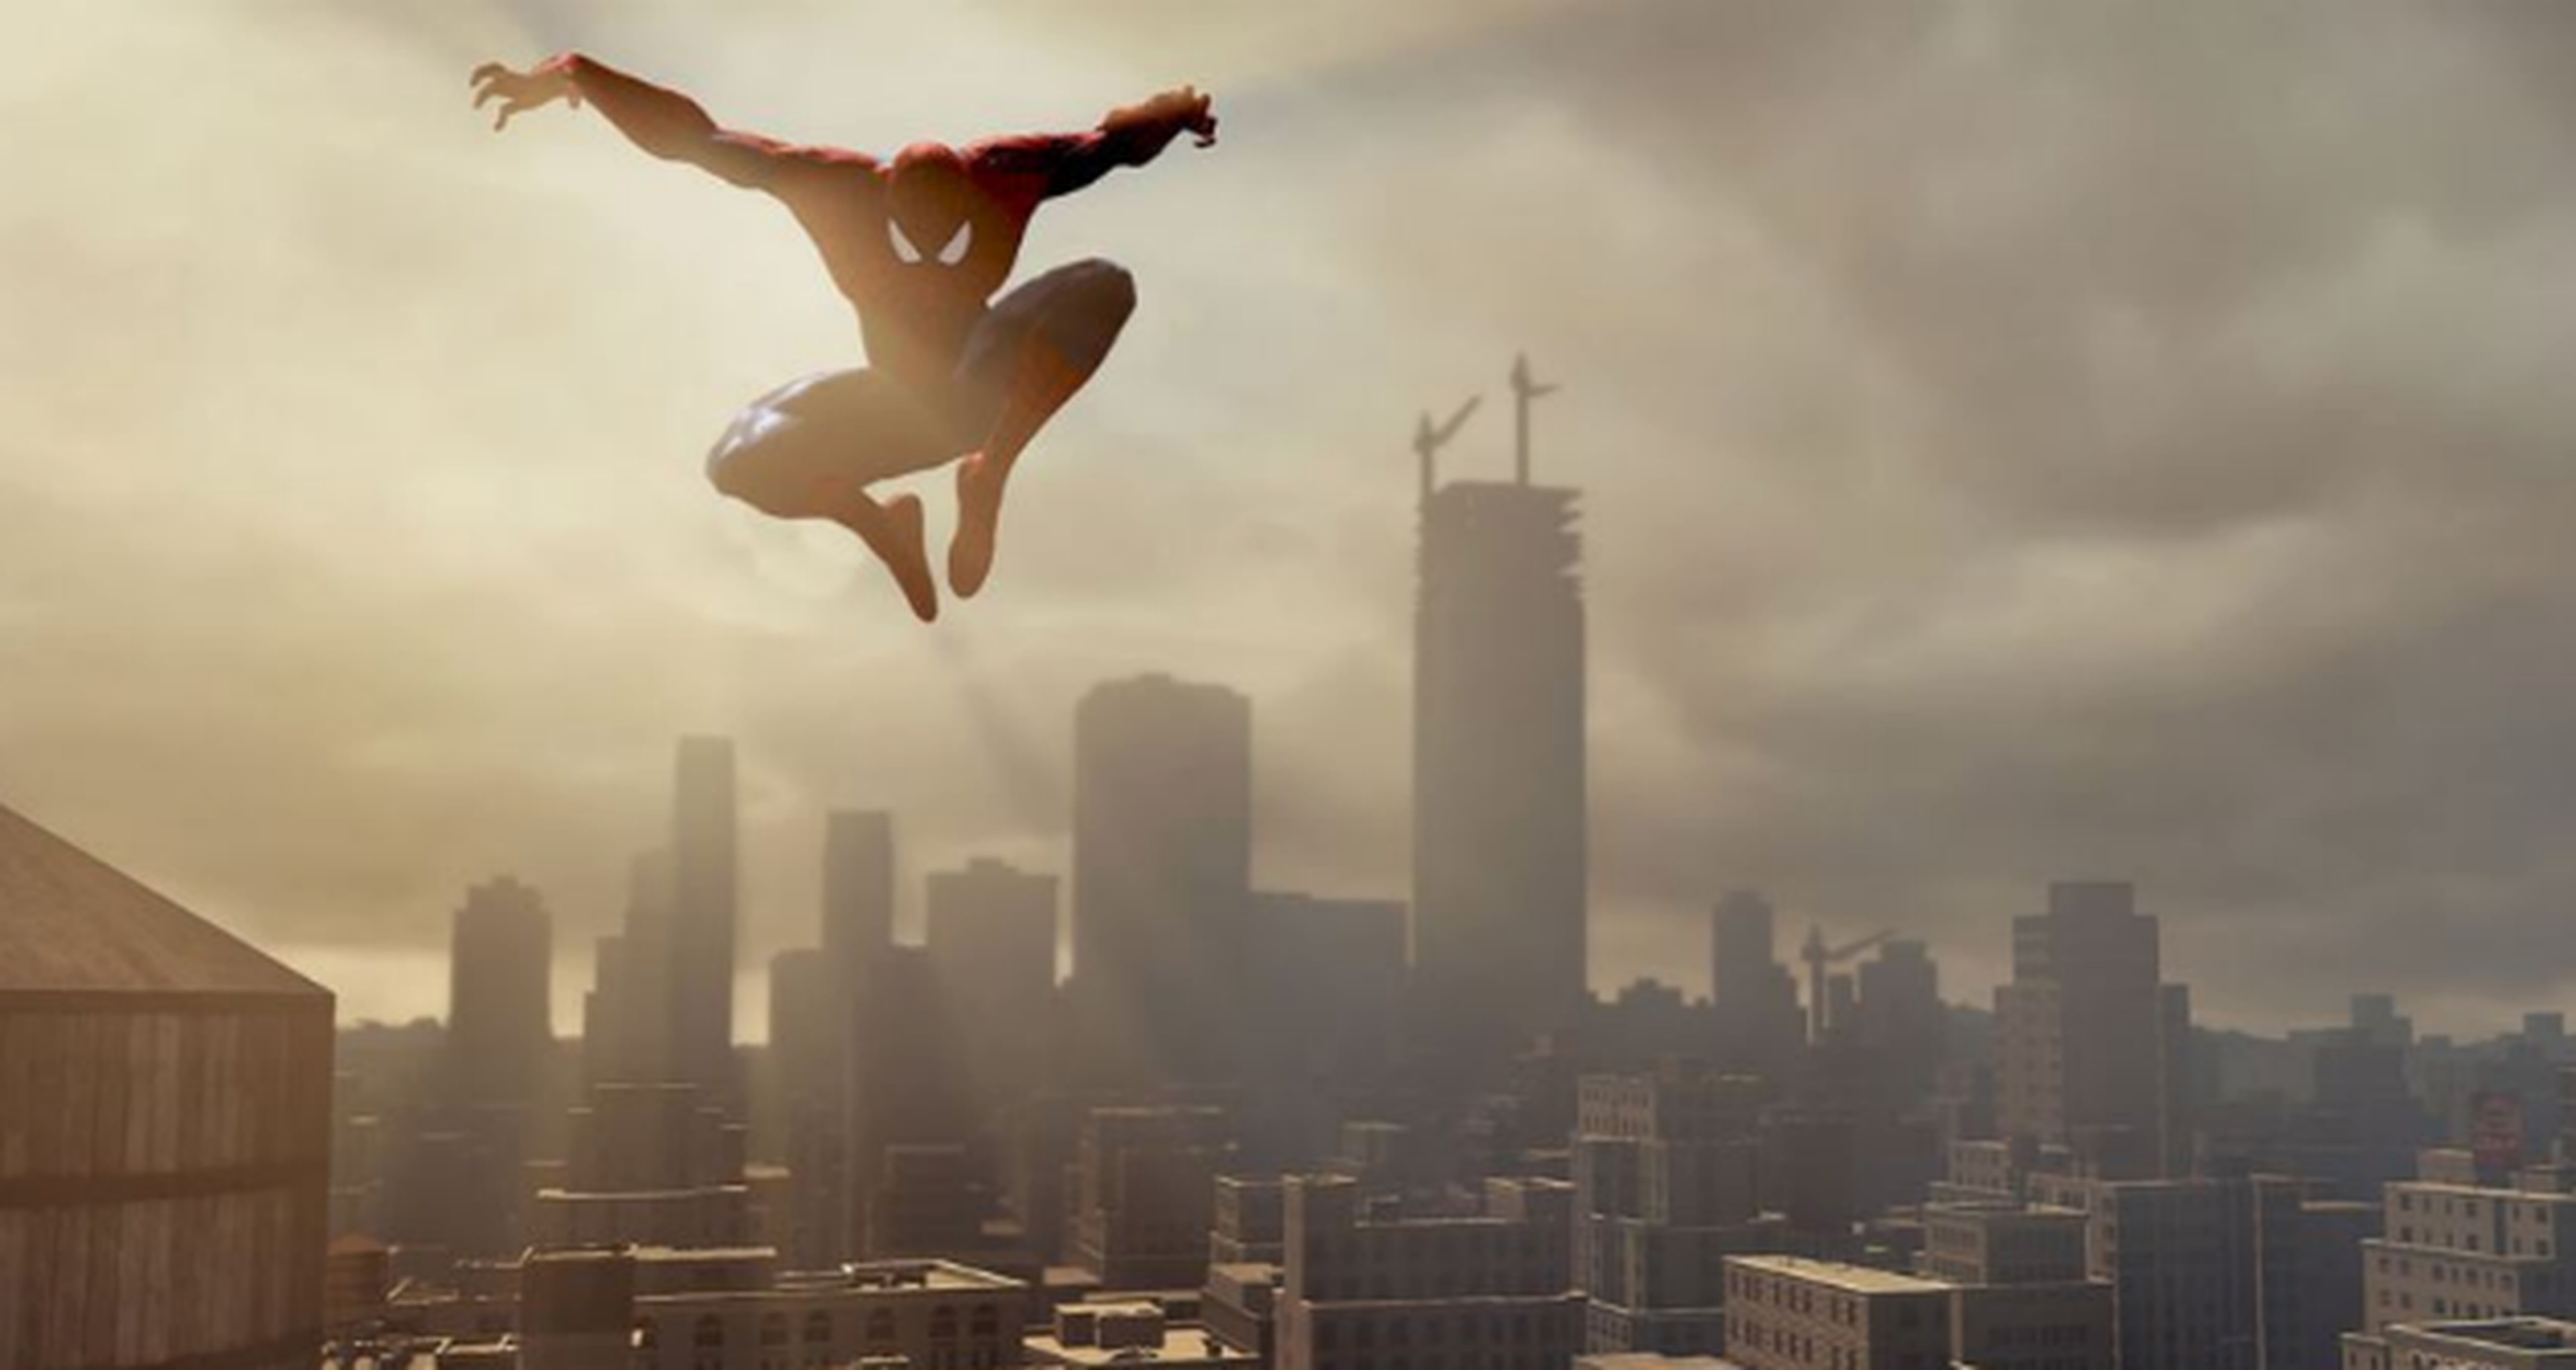 Posible fecha de lanzamiento para The Amazing Spider-man 2 en Xbox One